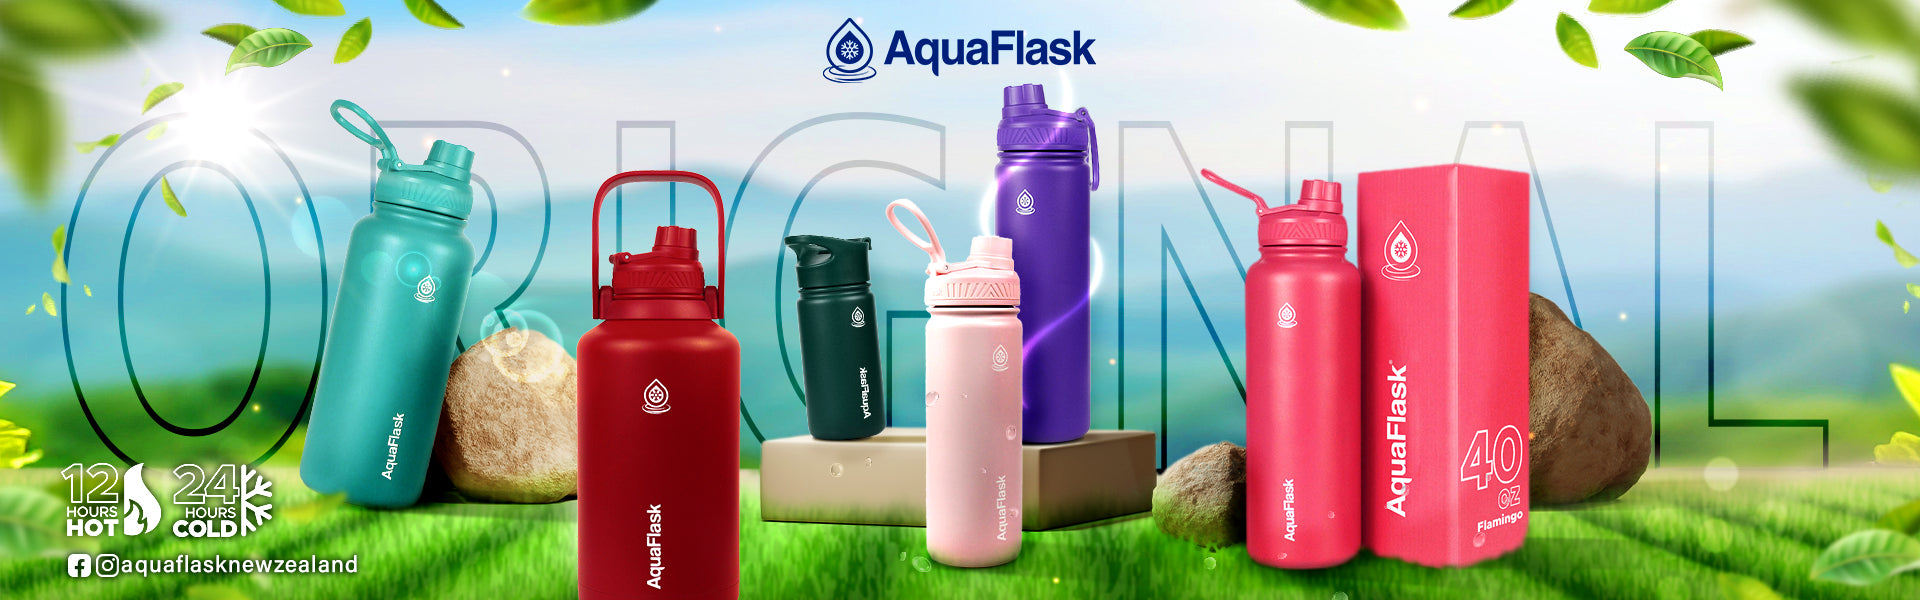 AquaFlask New Zealand